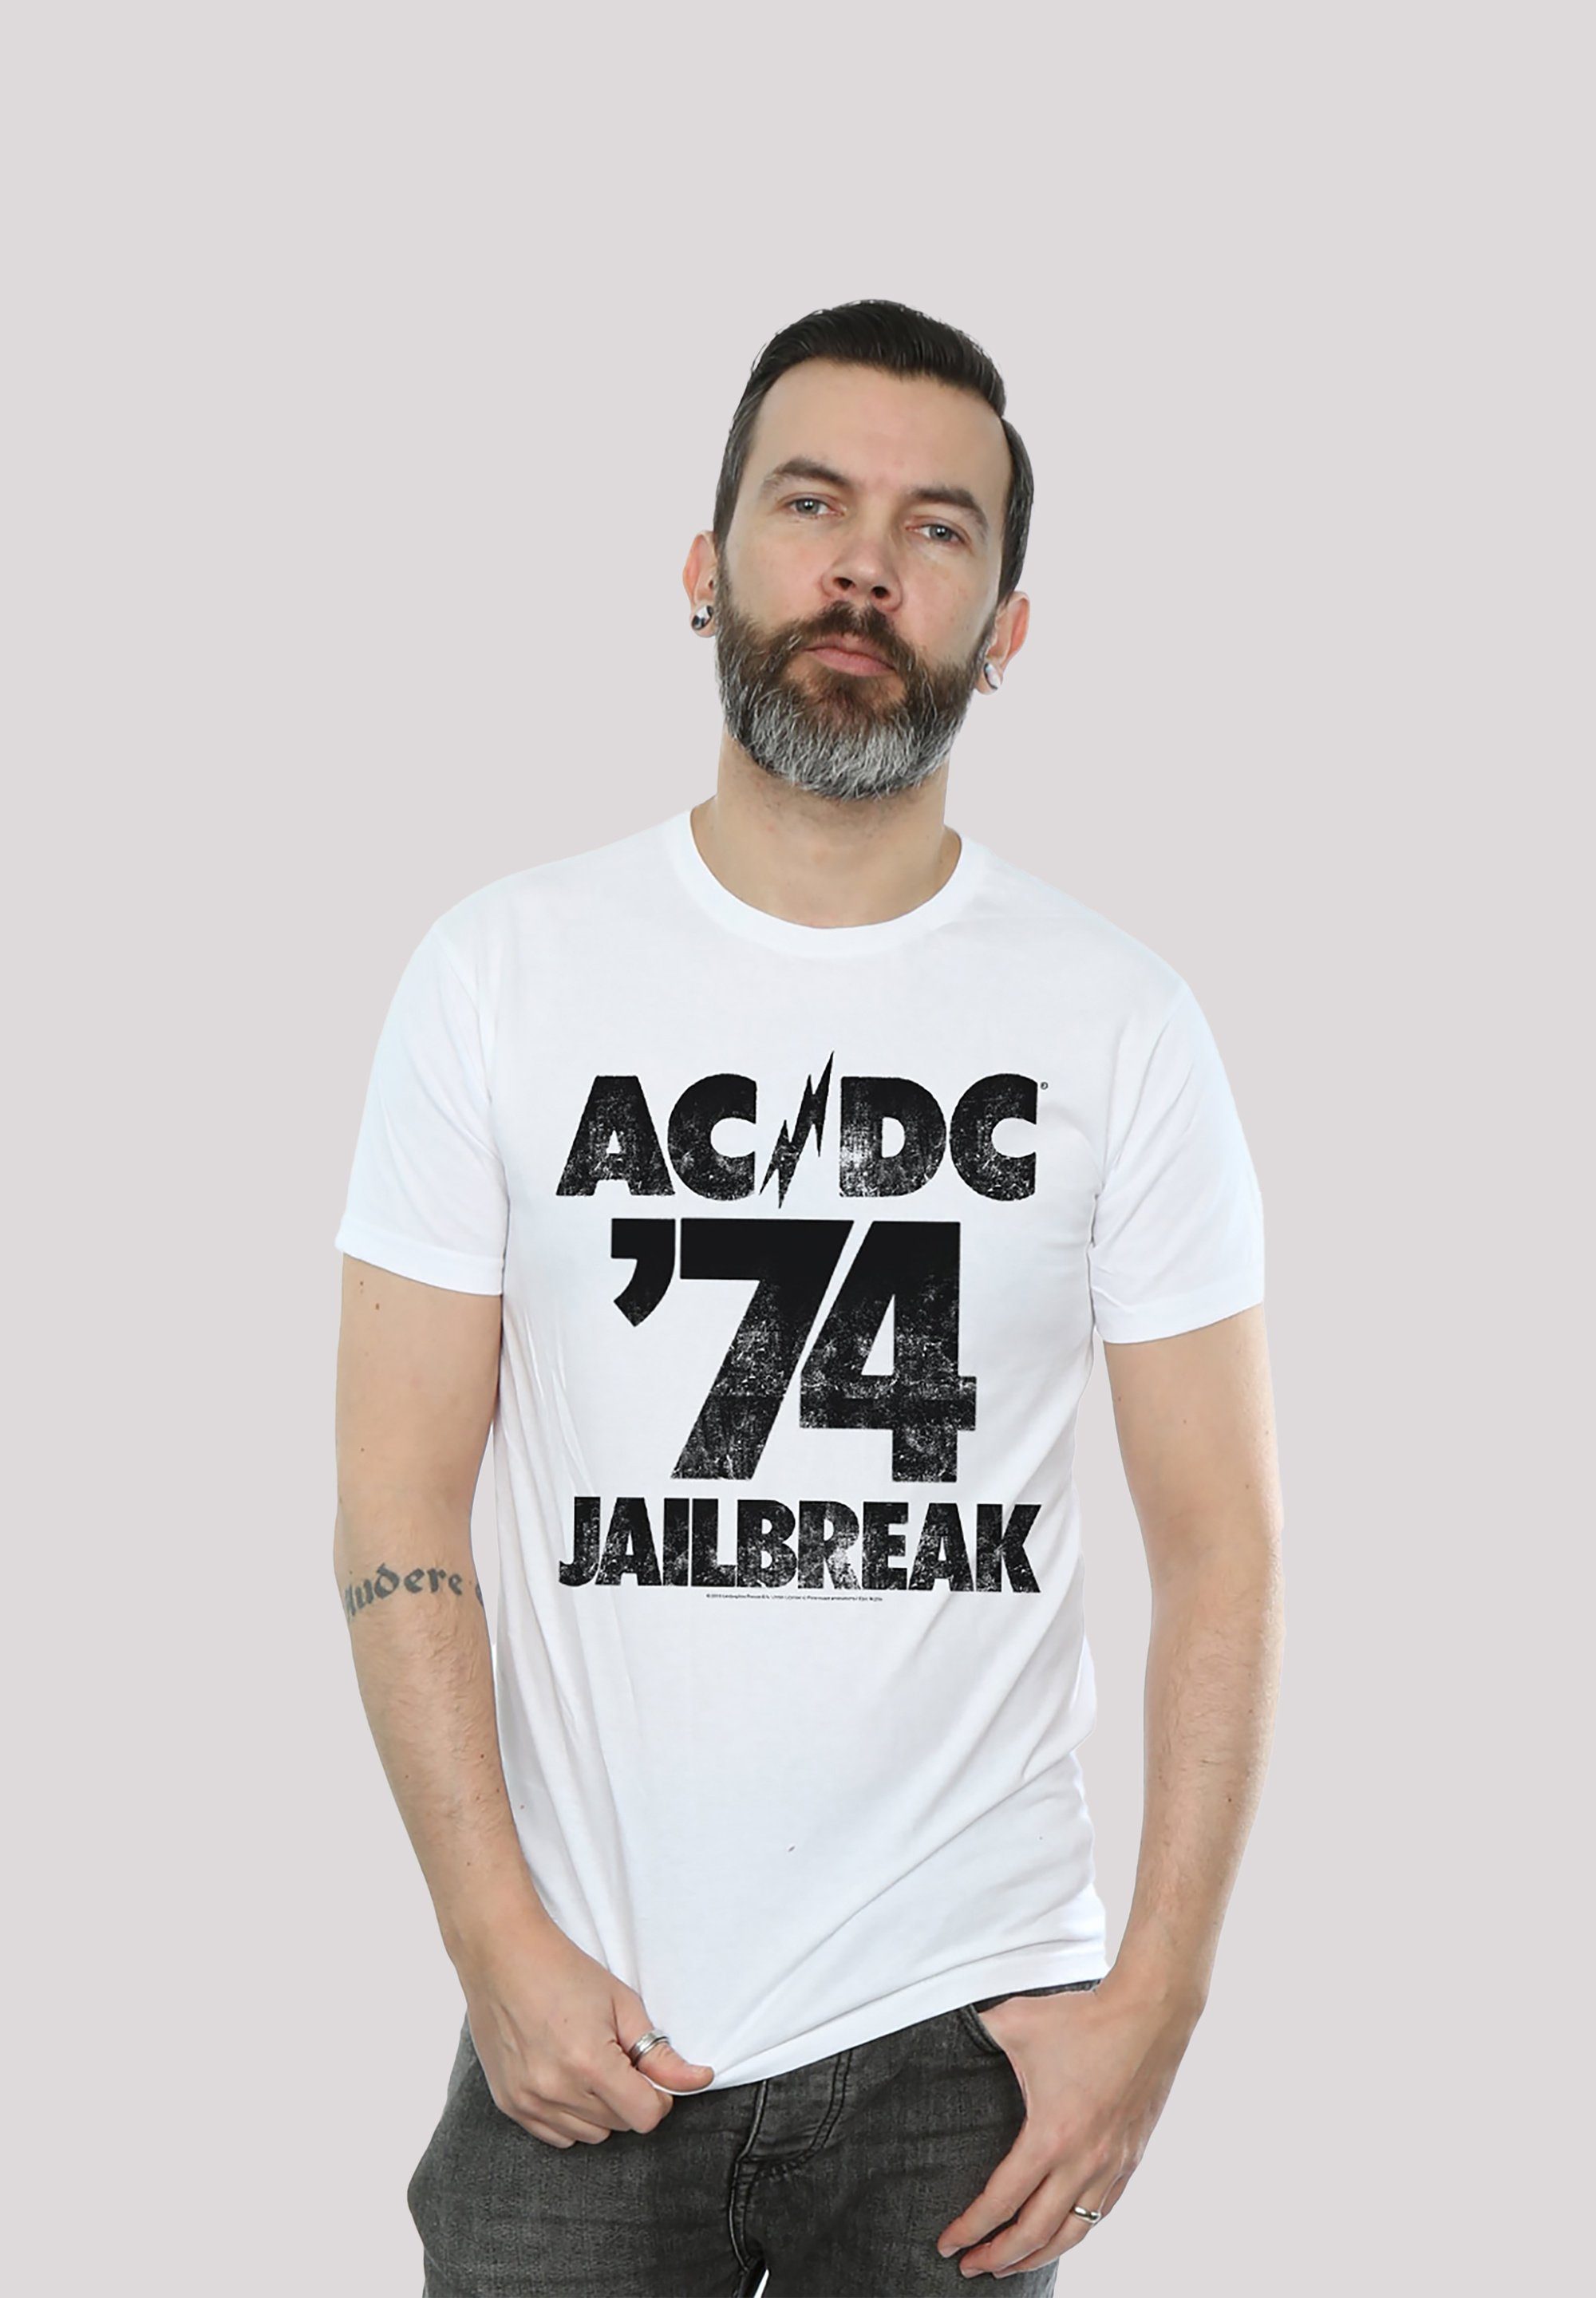 ACDC & Print Kinder F4NT4STIC Herren 74 für Jailbreak T-Shirt